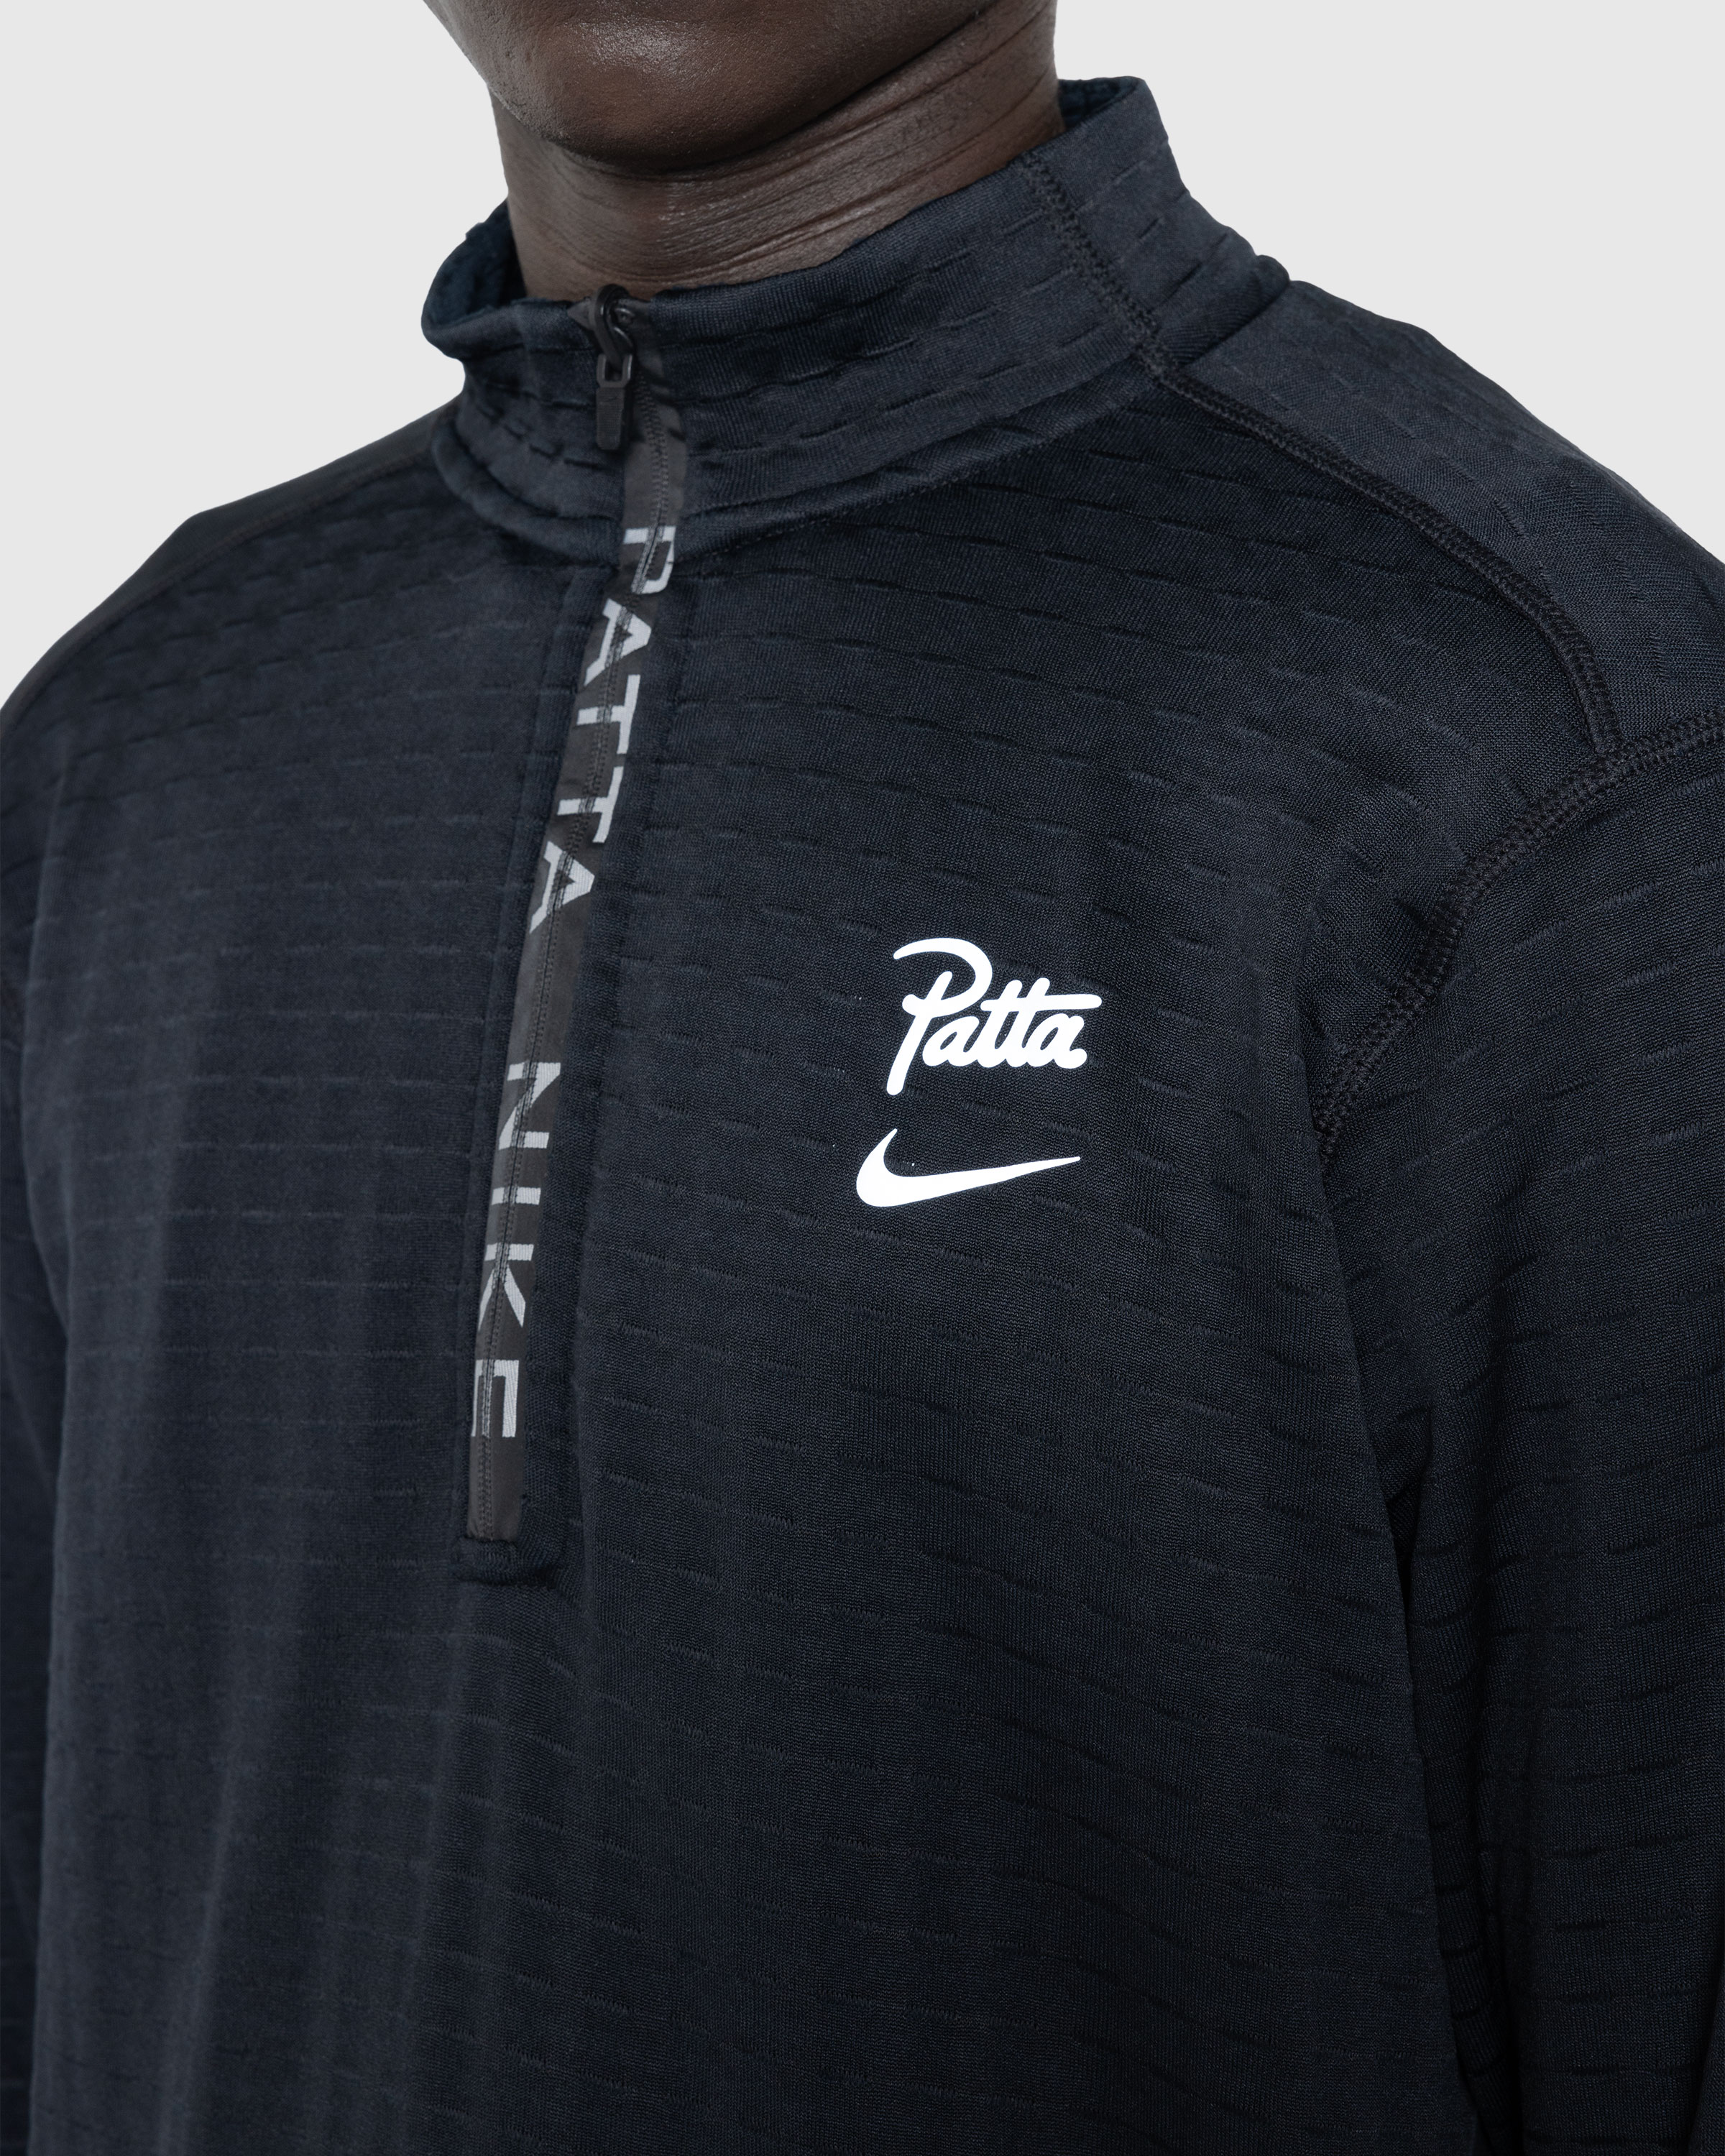 Nike x Patta – Half-Zip Long-Sleeve Top Black - Zip-Ups - Black - Image 5